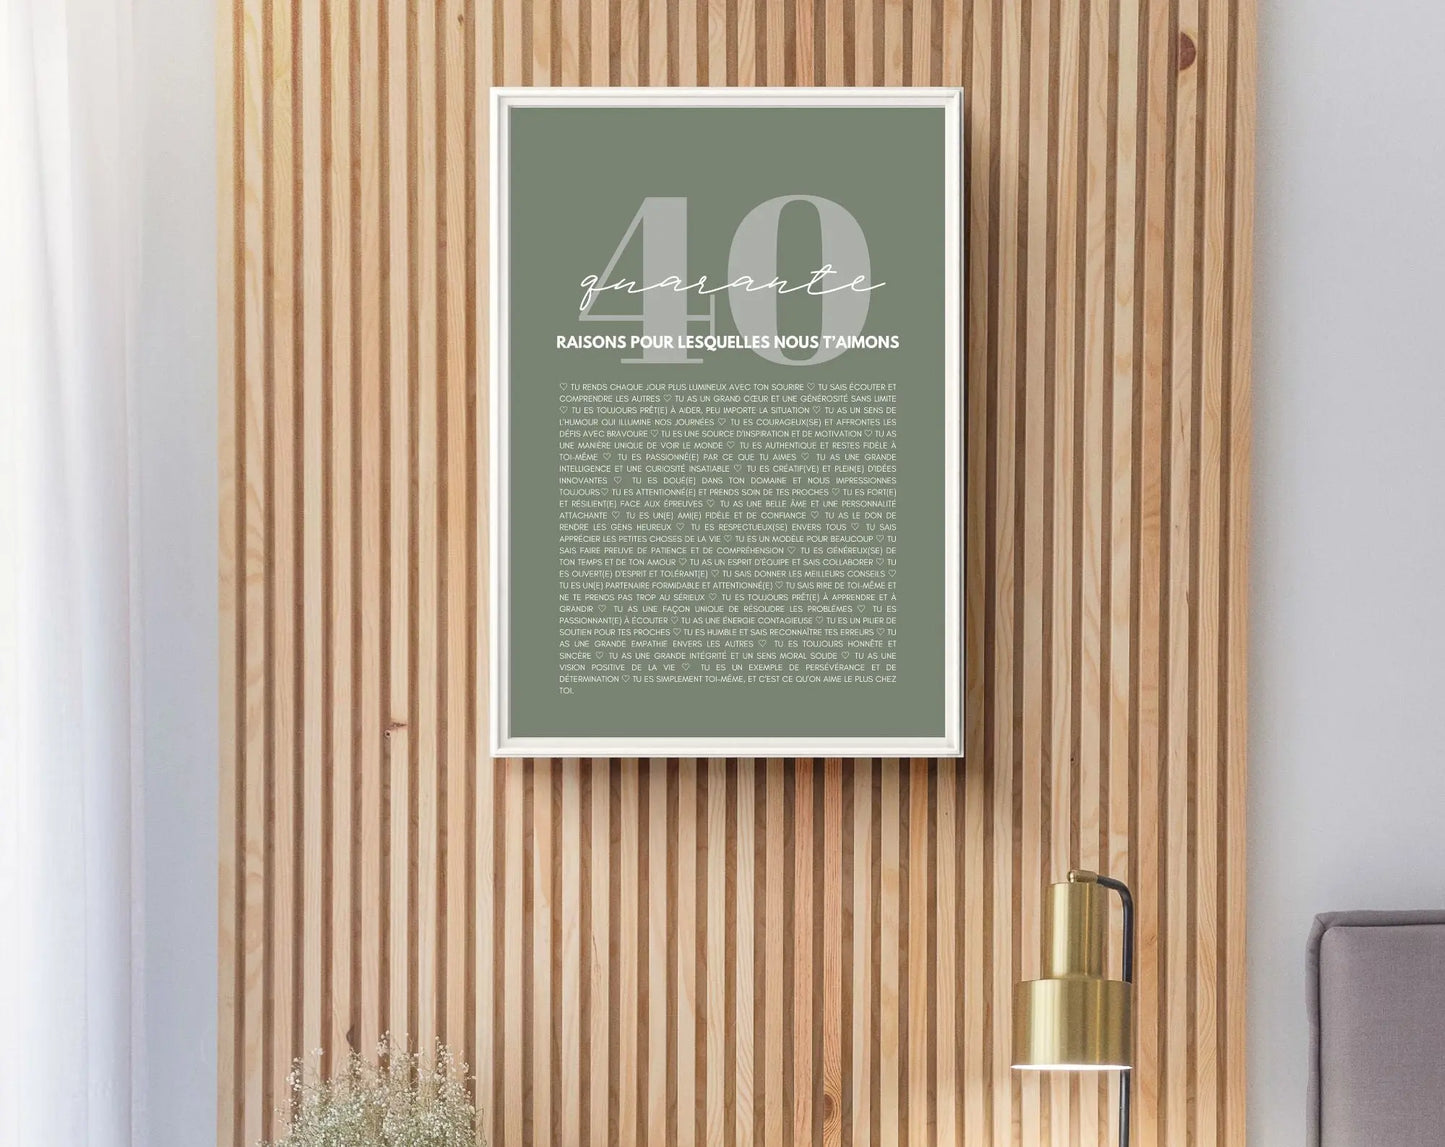 40 raisons pour lesquelles nous t'aimons vert - Cadeau anniversaire 40 ans FLTMfrance